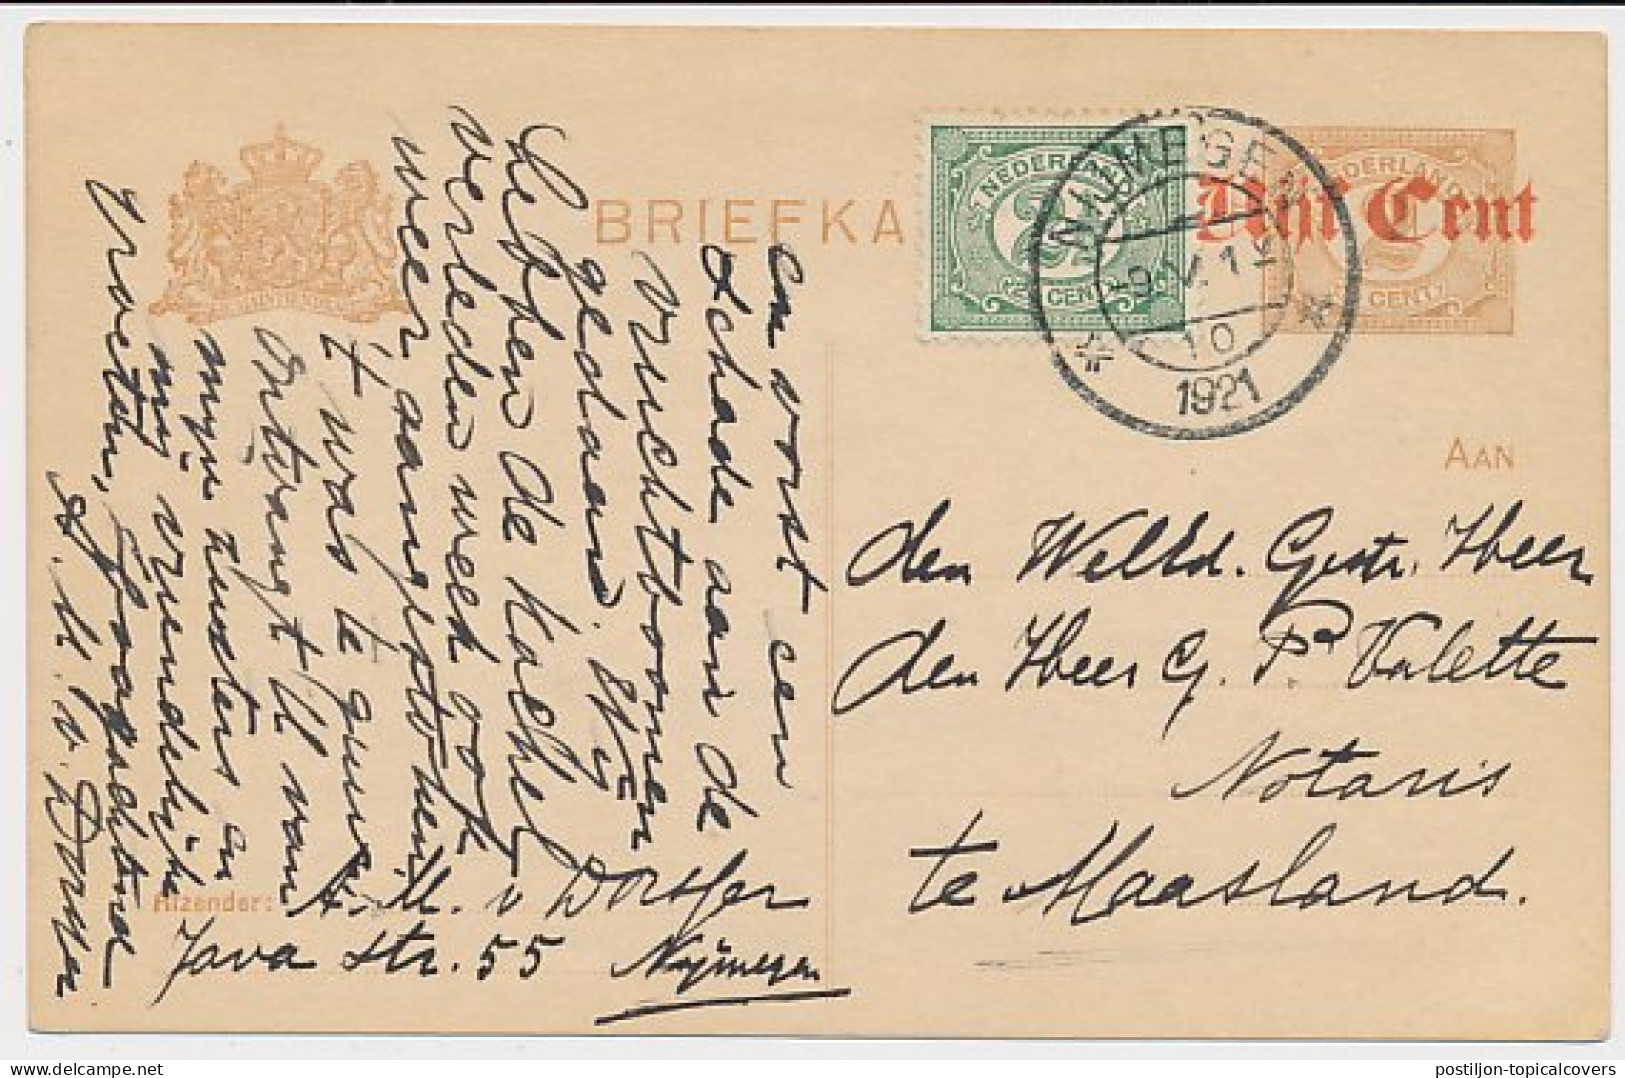 Briefkaart G. 107 A I / Bijfrankering Nijmegen - Maasland 1921 - Entiers Postaux